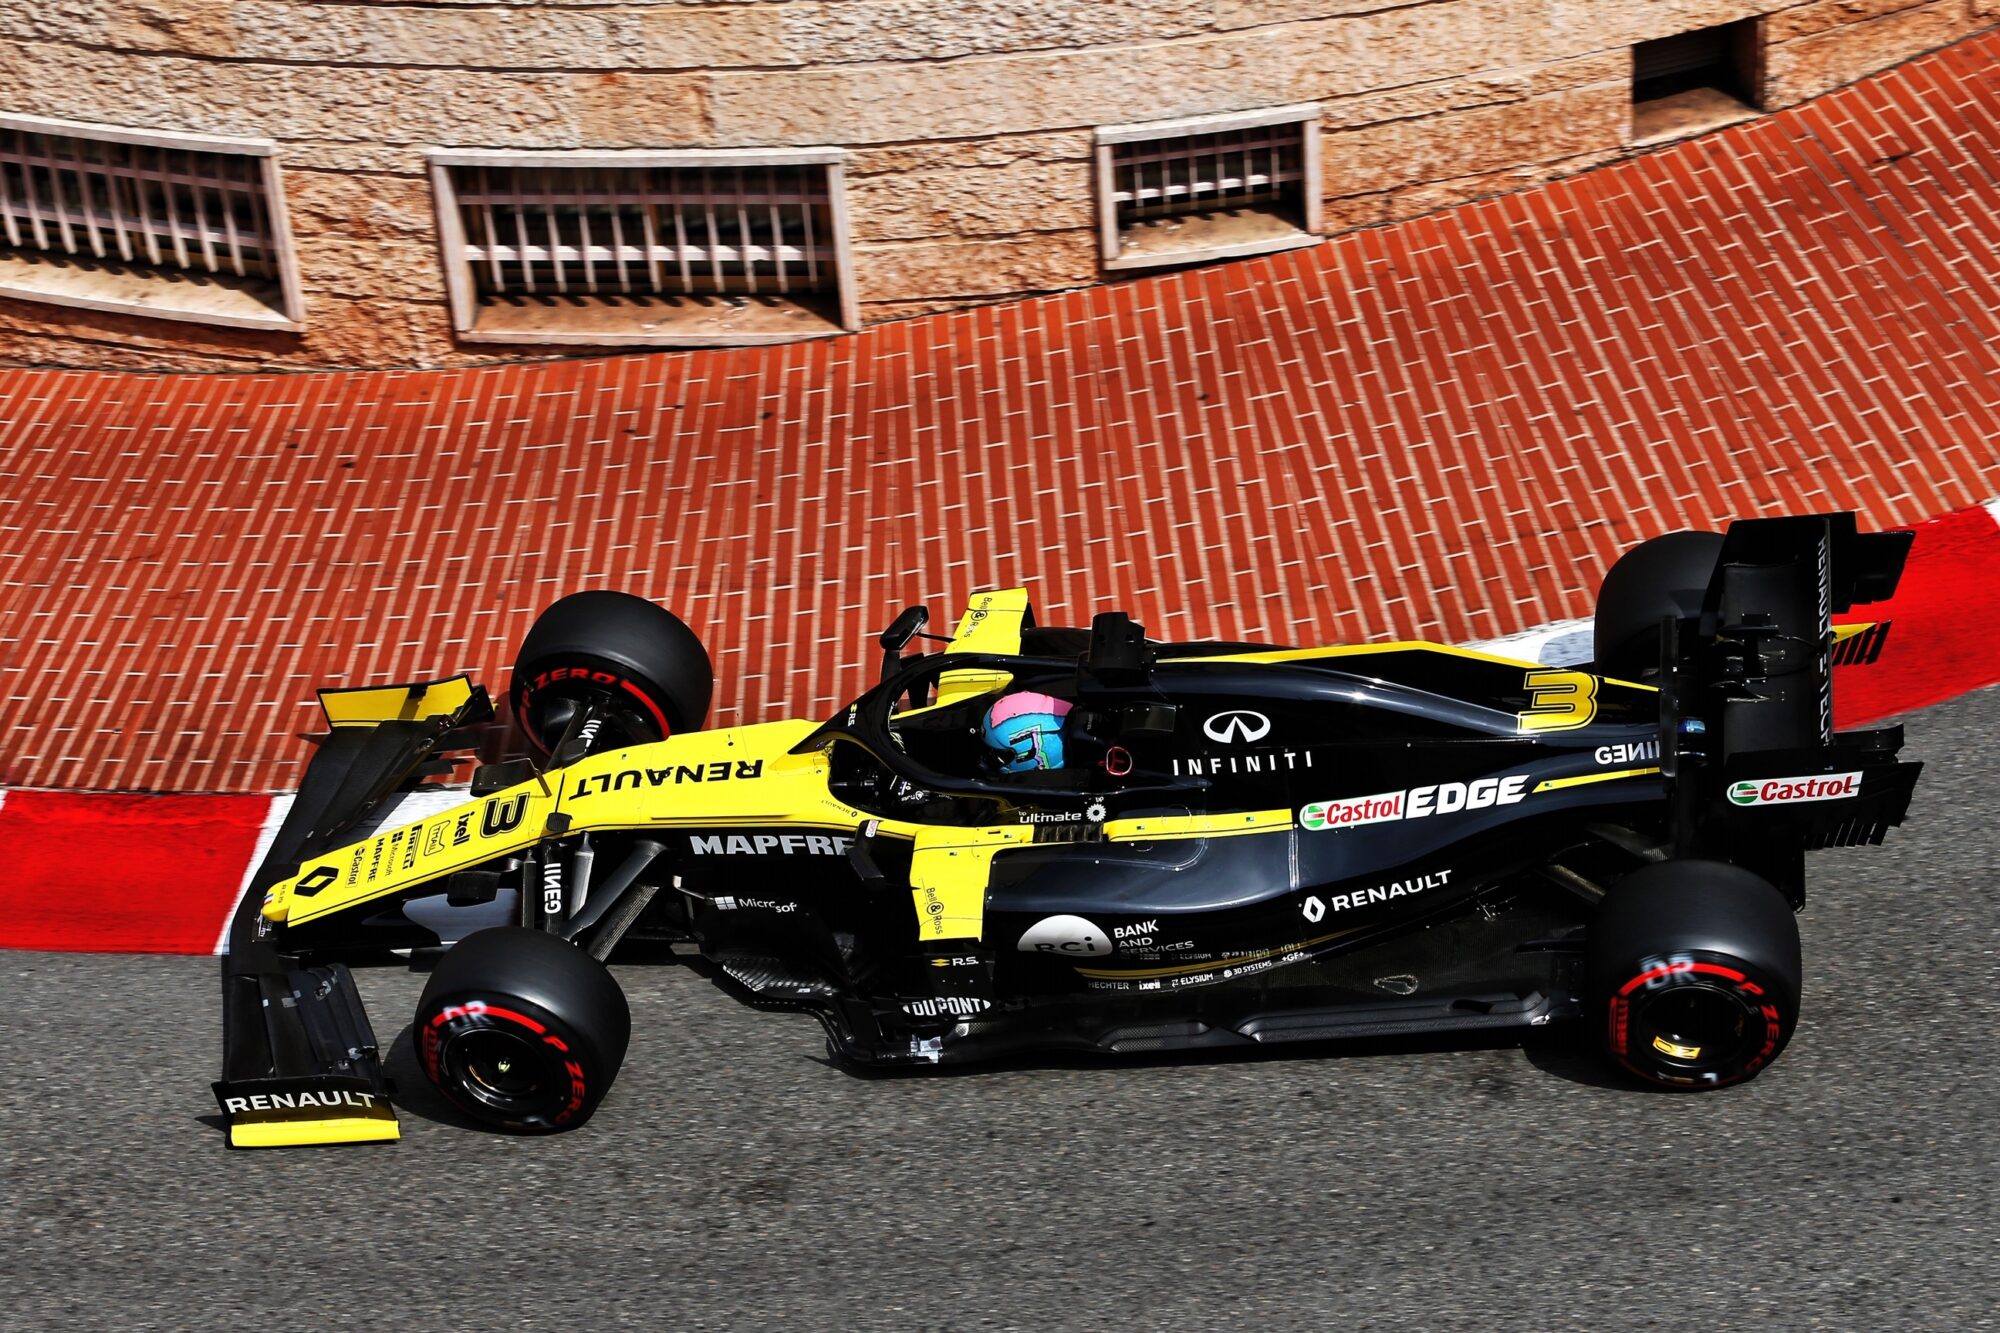 2019 - Grand Prix de Monaco